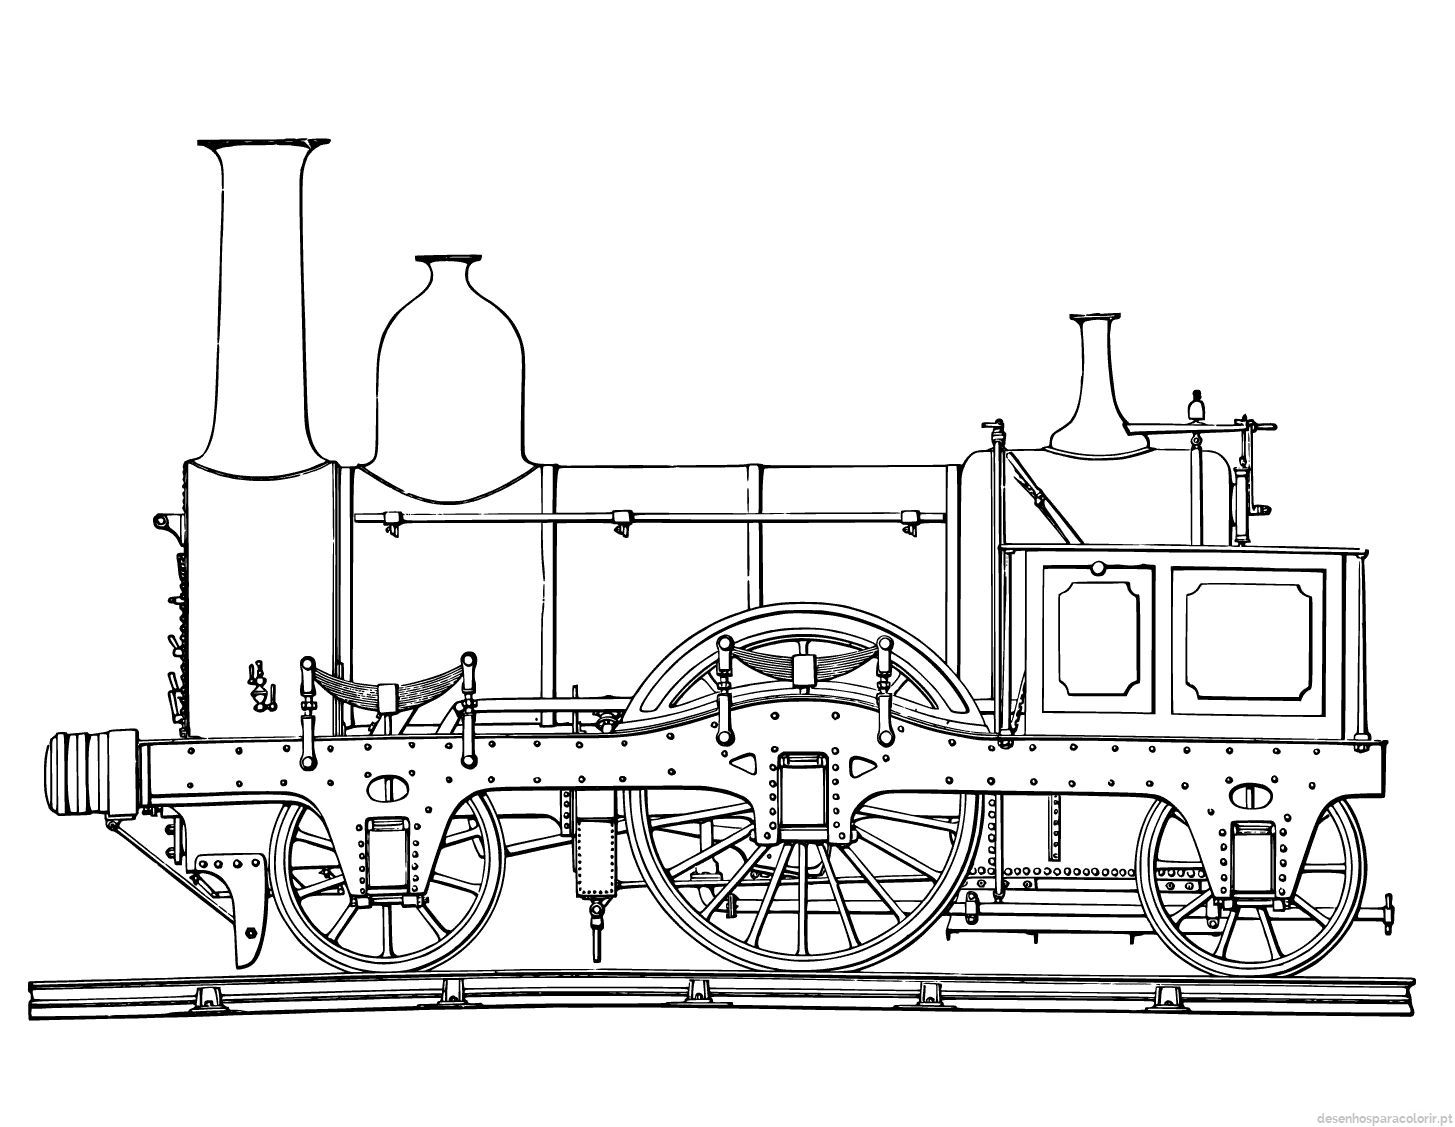 Locomotiva de comboio antigo a vapor